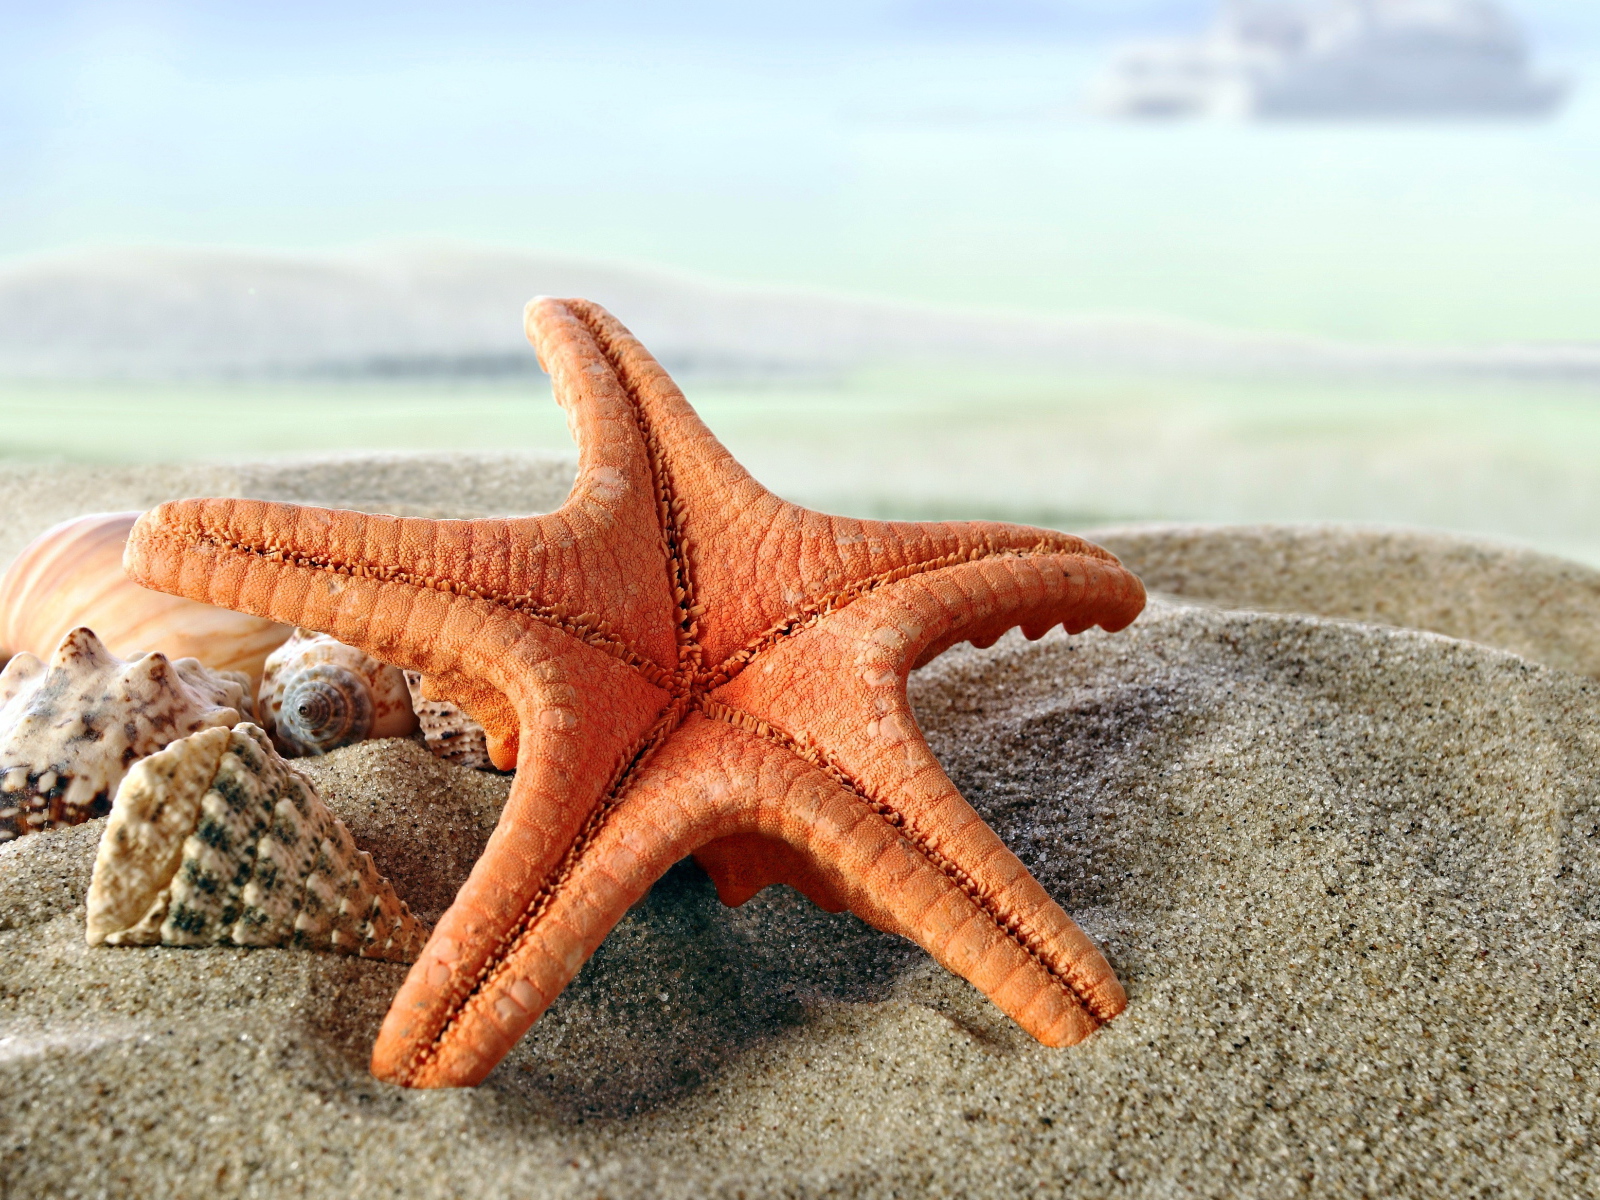 Beautiful starfish and seashells on sand